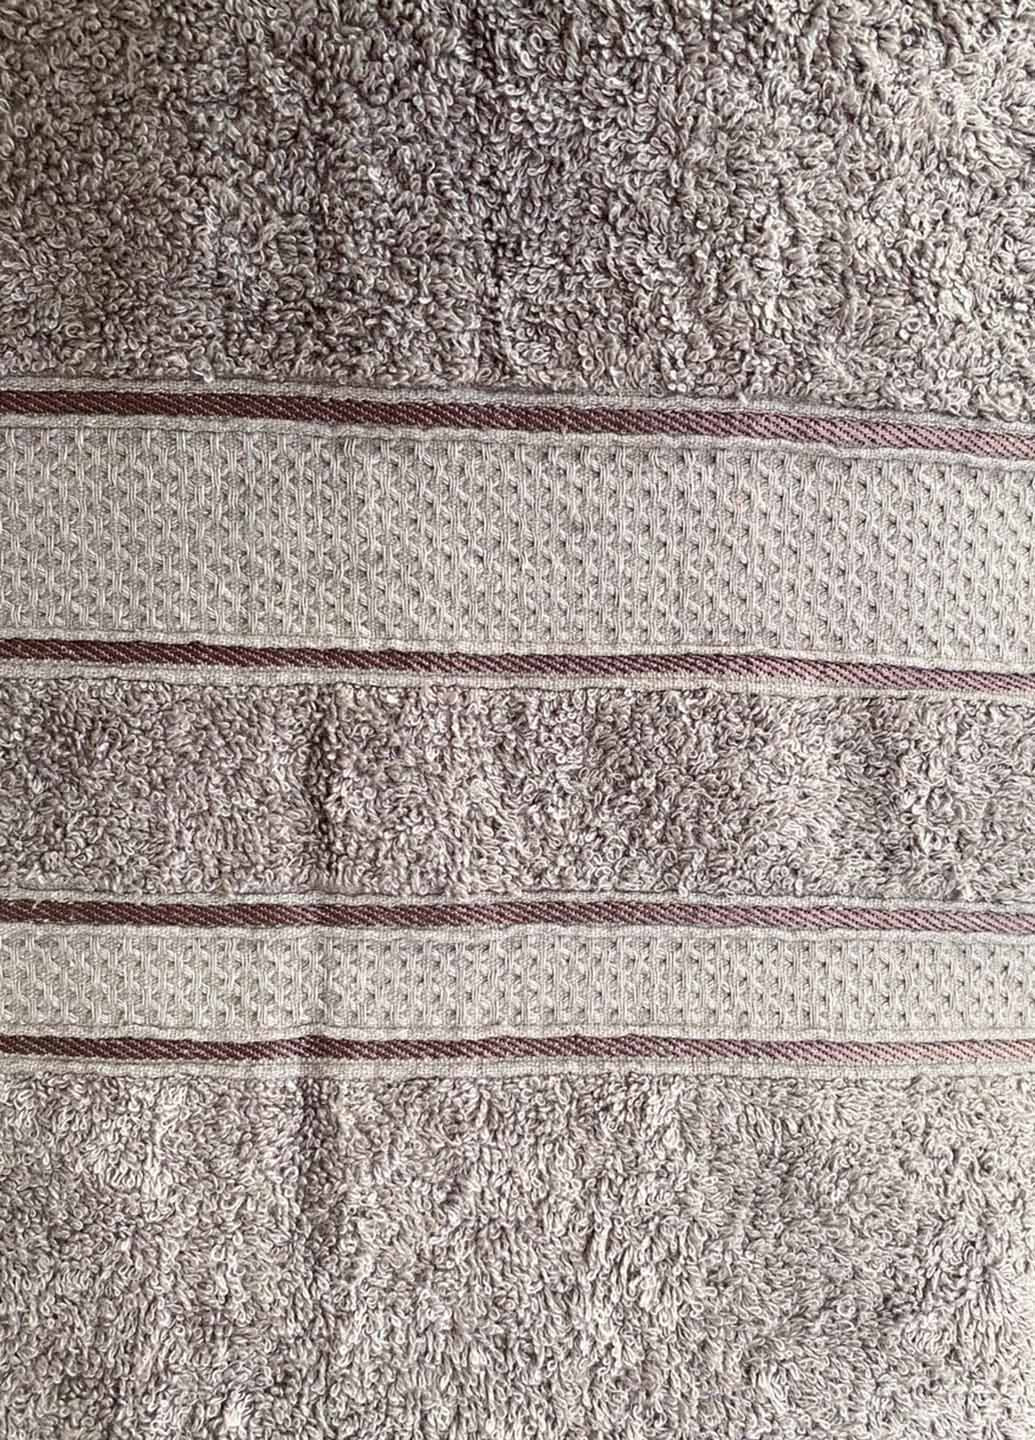 Homedec полотенце банное большое махровое 180х100 см полоска серый производство - Турция